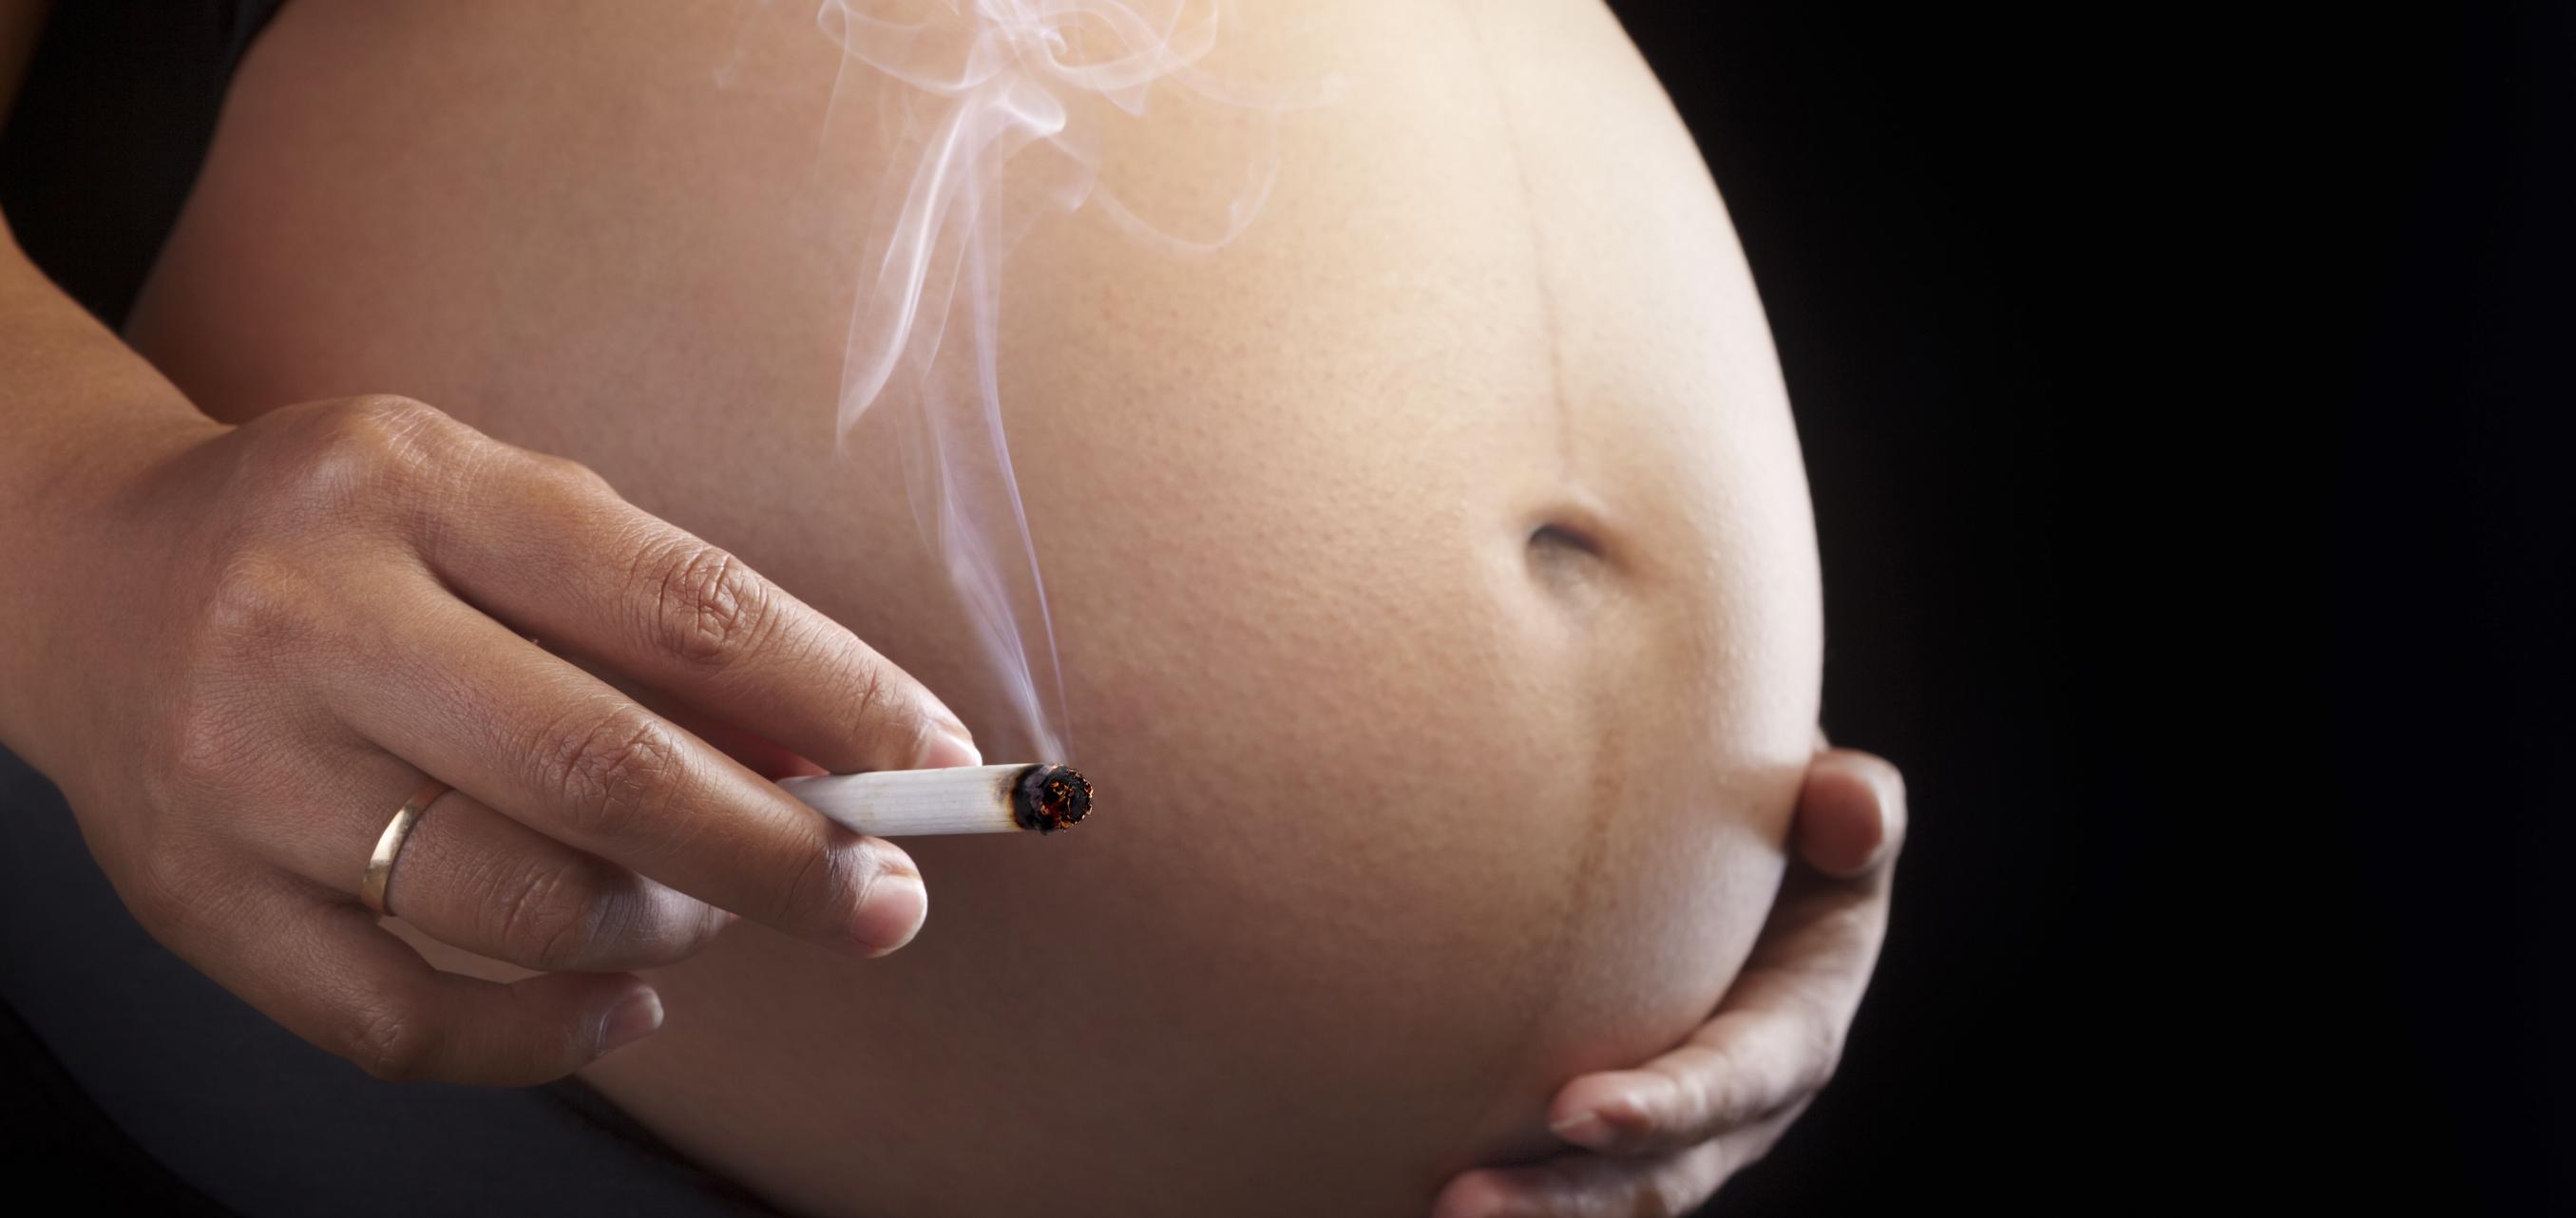 تاثیر سیگار بر جنین